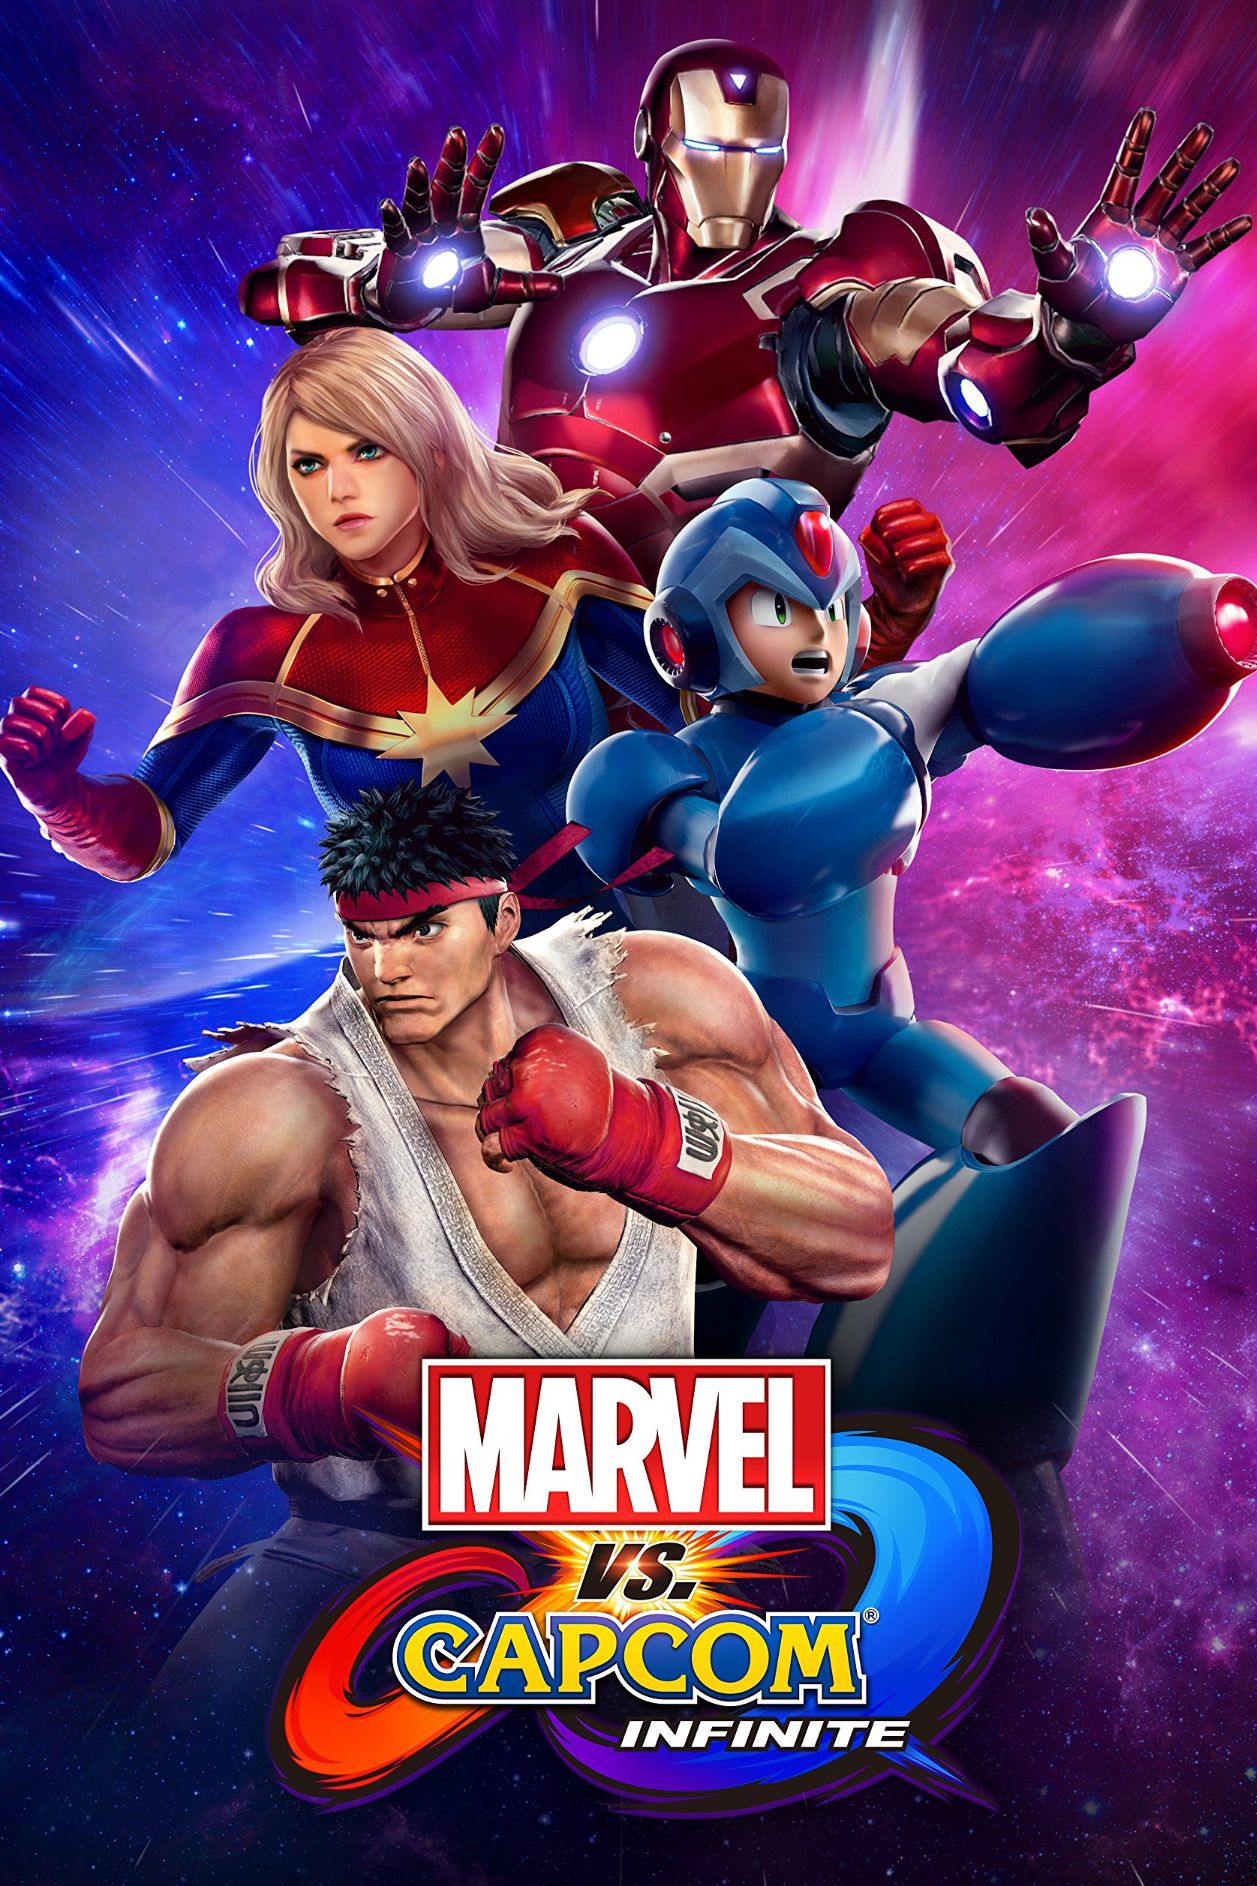 Marvel vs capcom infinite game poster